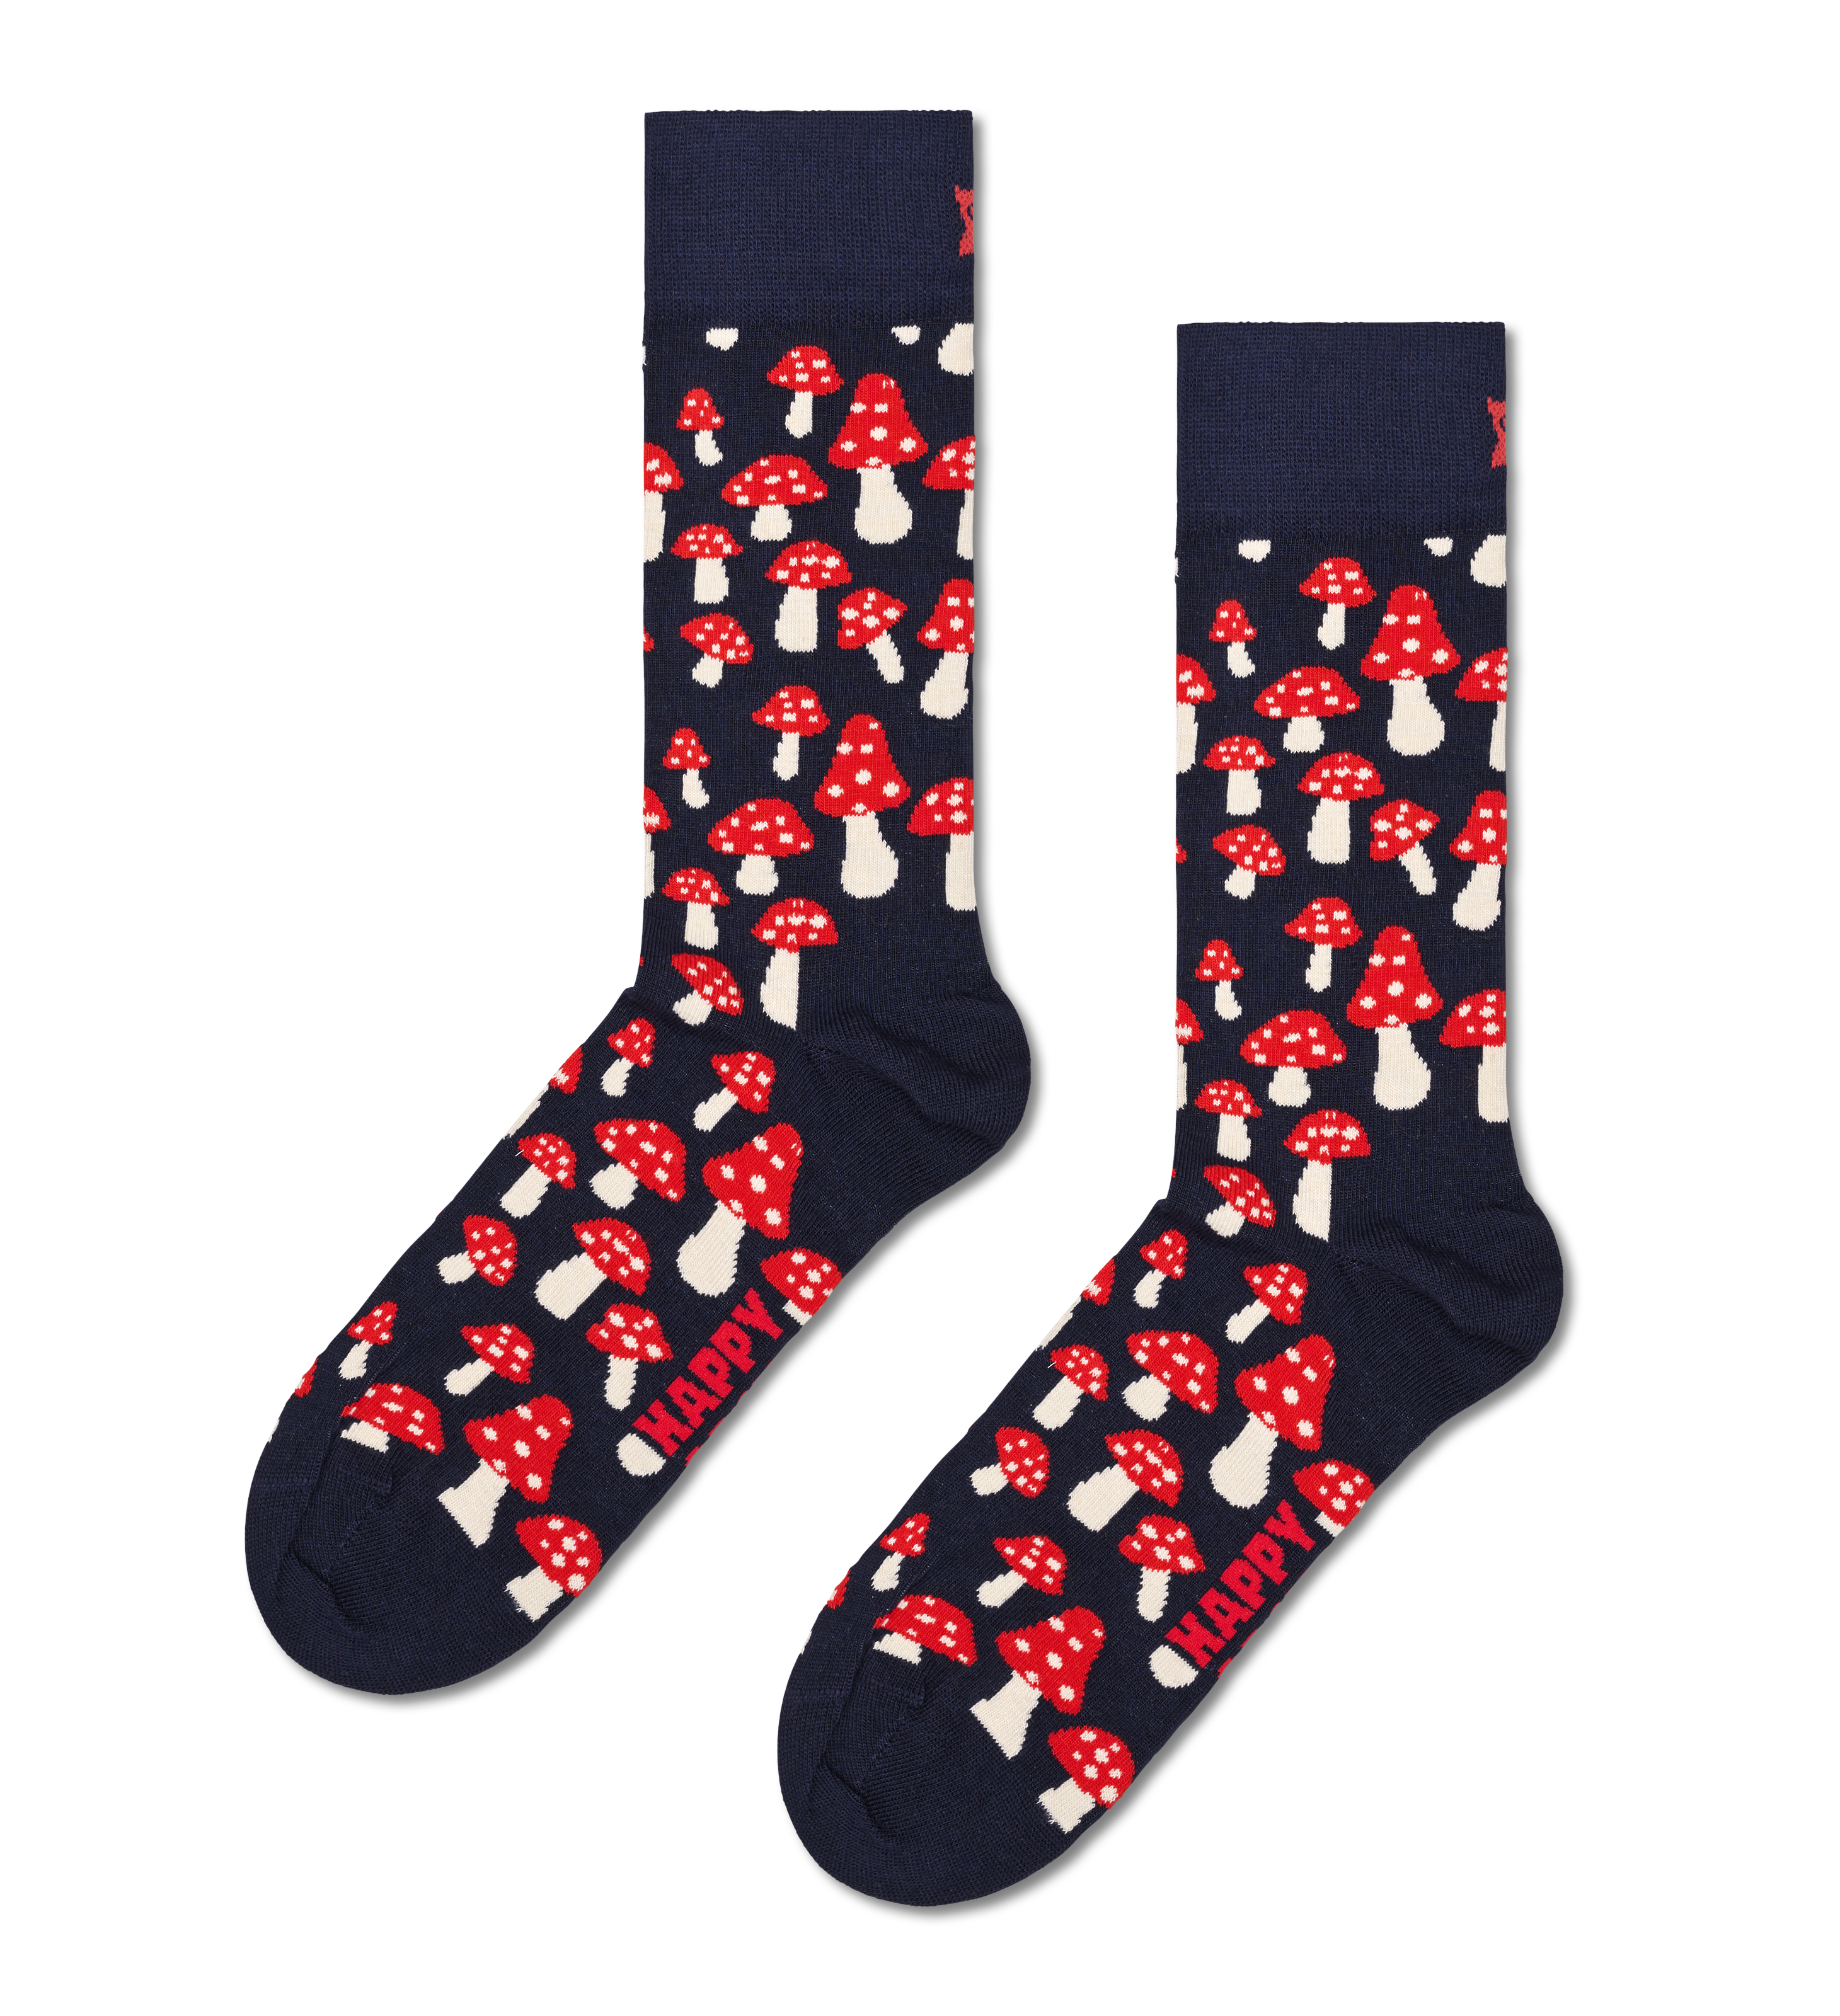 Happy Socks 4-Pack Multi-color Socks - 40$, XMIX09-6050